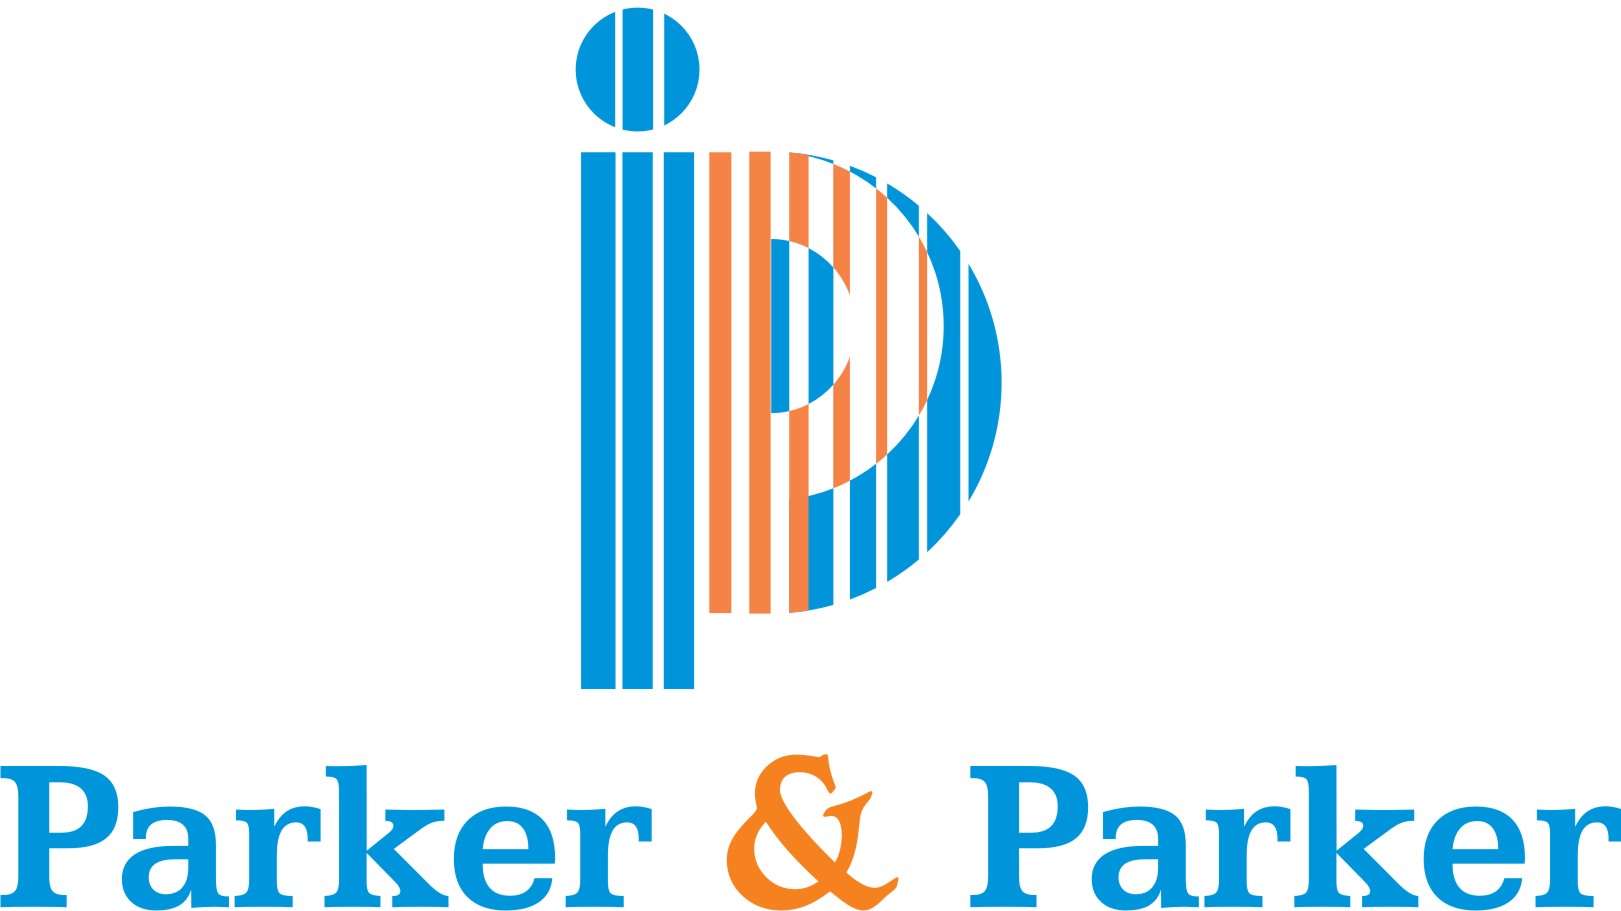 Parker & Parker Co., LLP